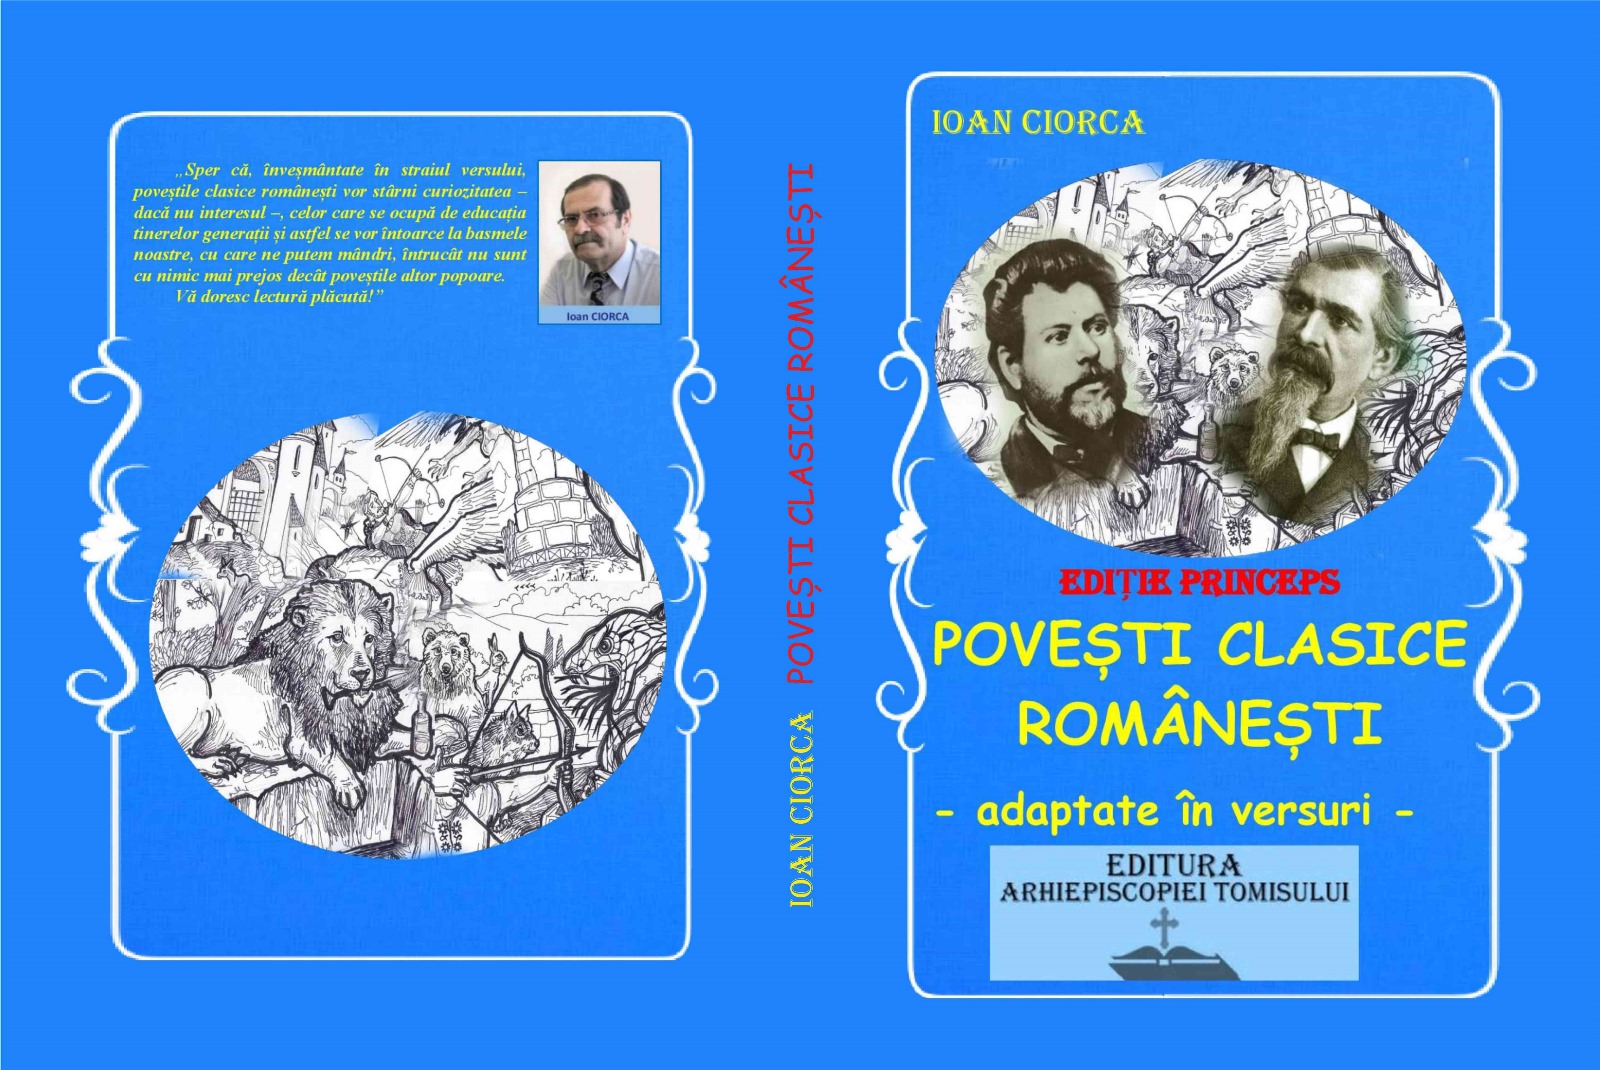 Noutate literară de excepție! Invitație la "Povești clasice românești", adaptate în versuri, de Ioan Ciorca - autorul ''Bibliei în versuri de la Cluj''